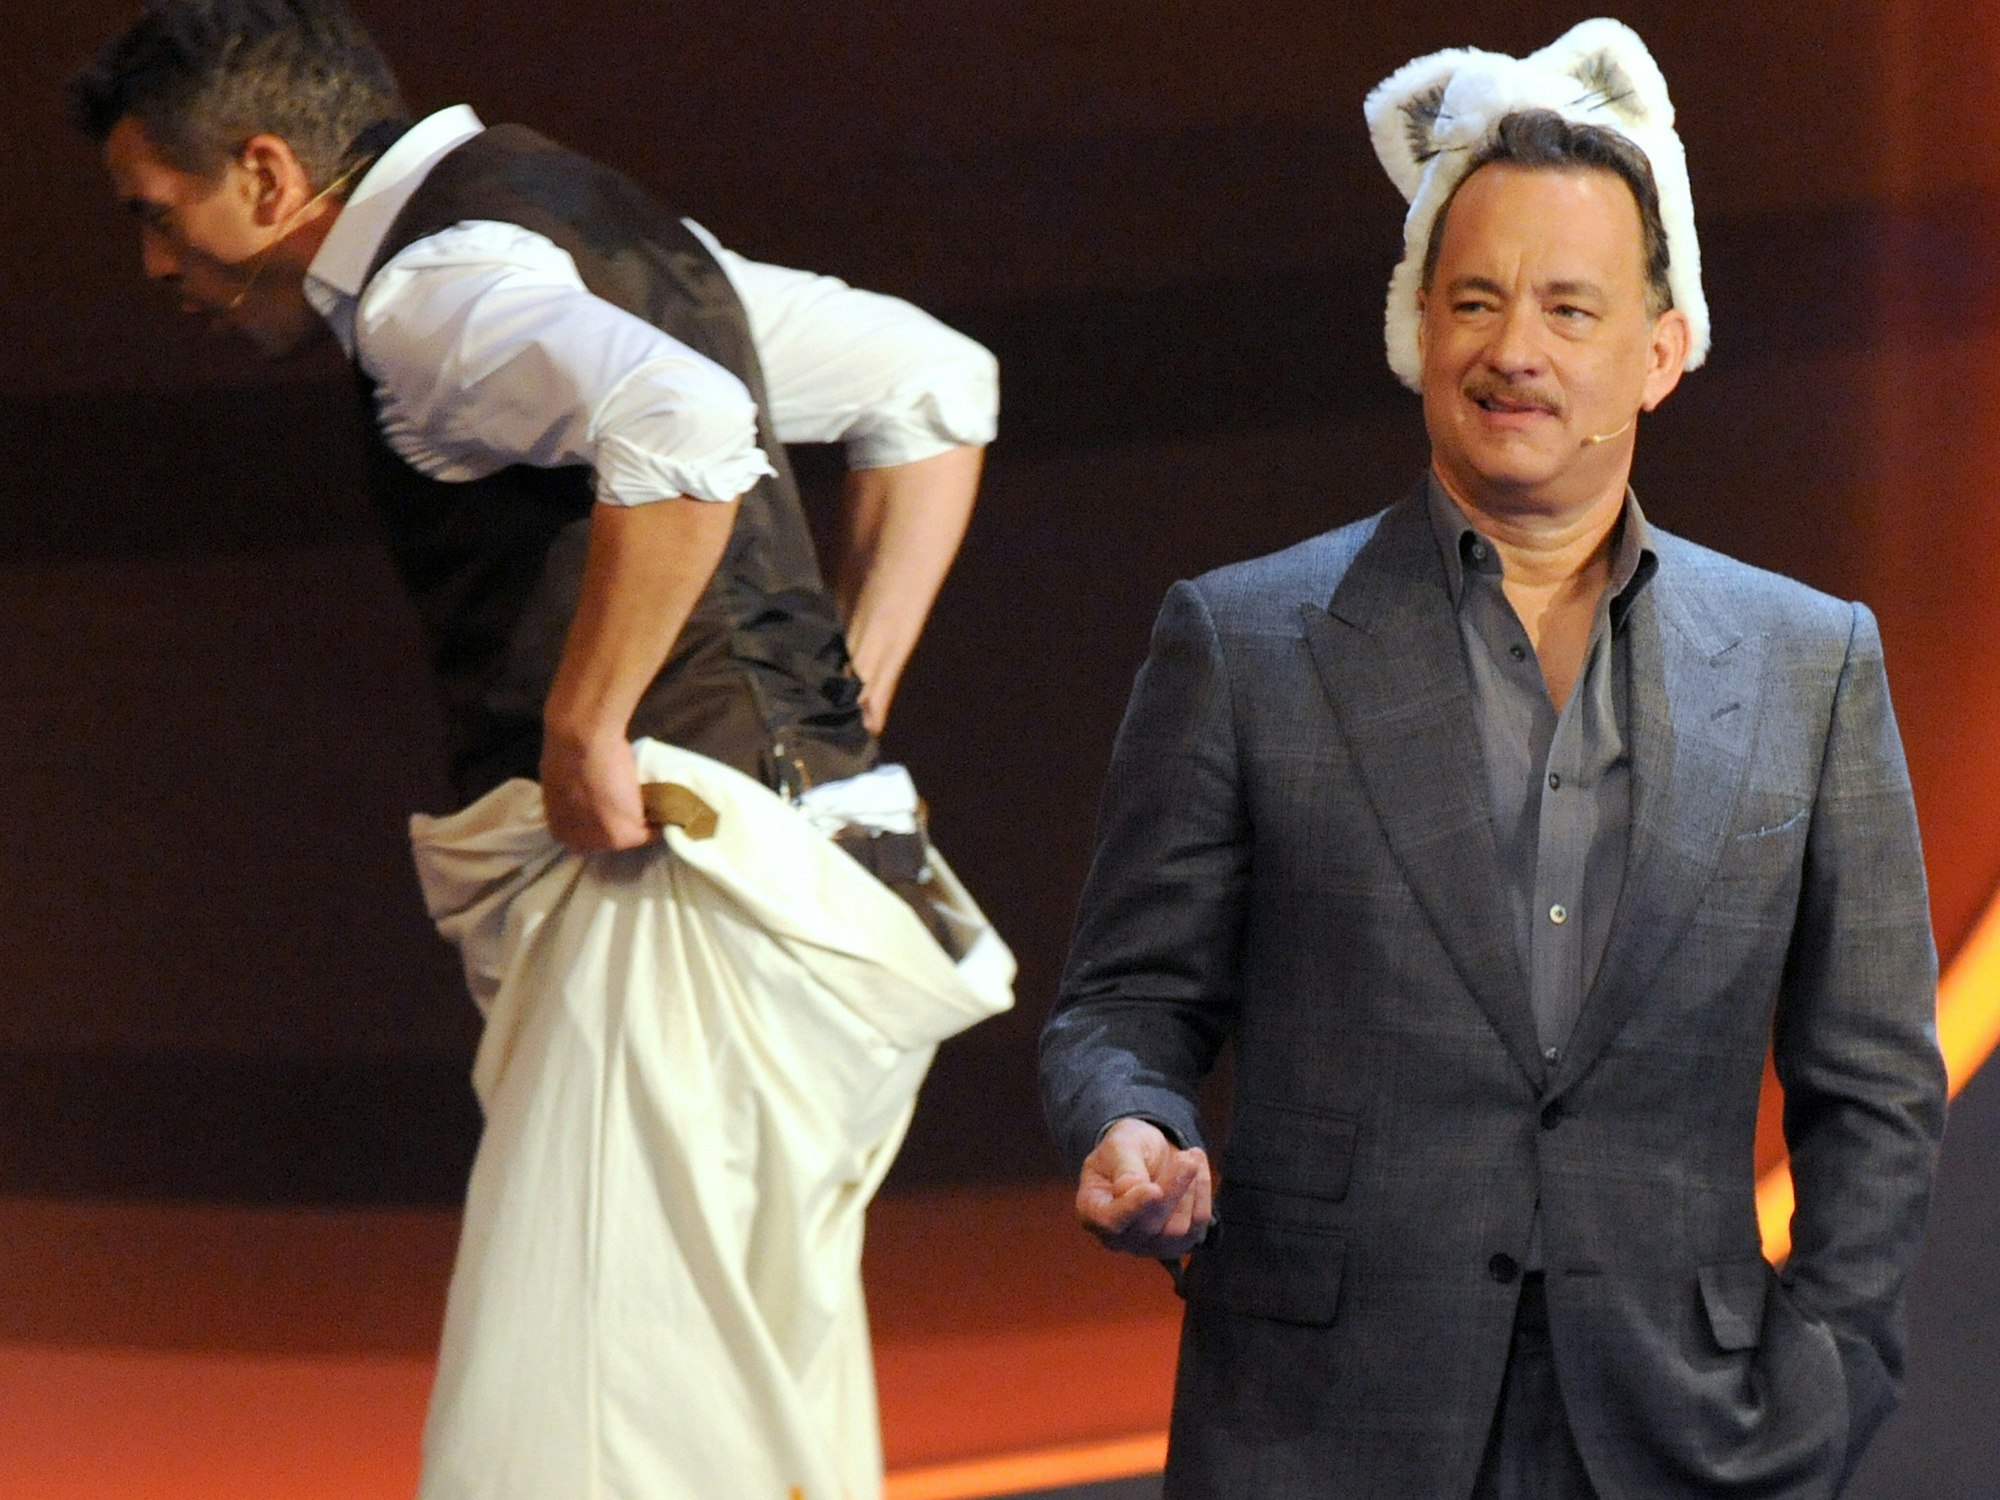 Schauspieler Tom Hanks (r) stellt am 03.11.2012 den Wendepunkt beim Sackhüpfen mit Moderator Markus Lanz in der ZDF-Livesendung "Wetten dass..?" aus Bremen da.